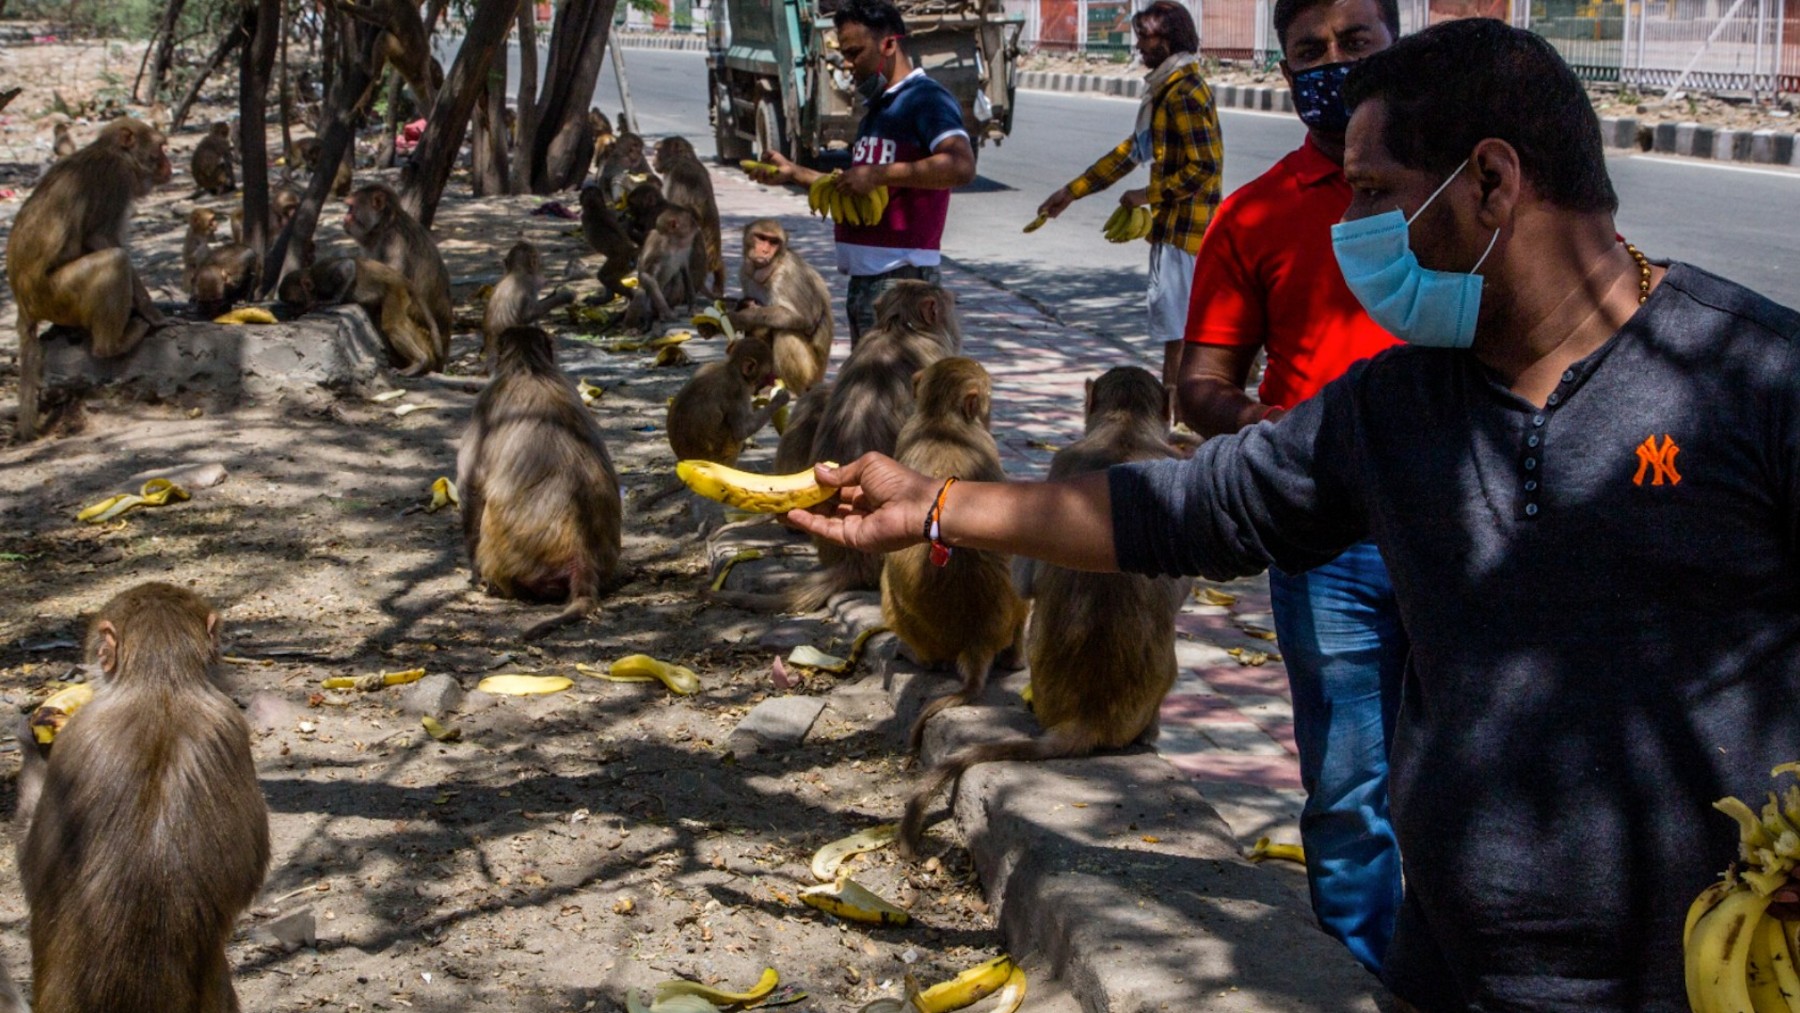 Los hombres dan plátanos a los monos reunidos cerca de una carretera en Nueva Delhi, India.